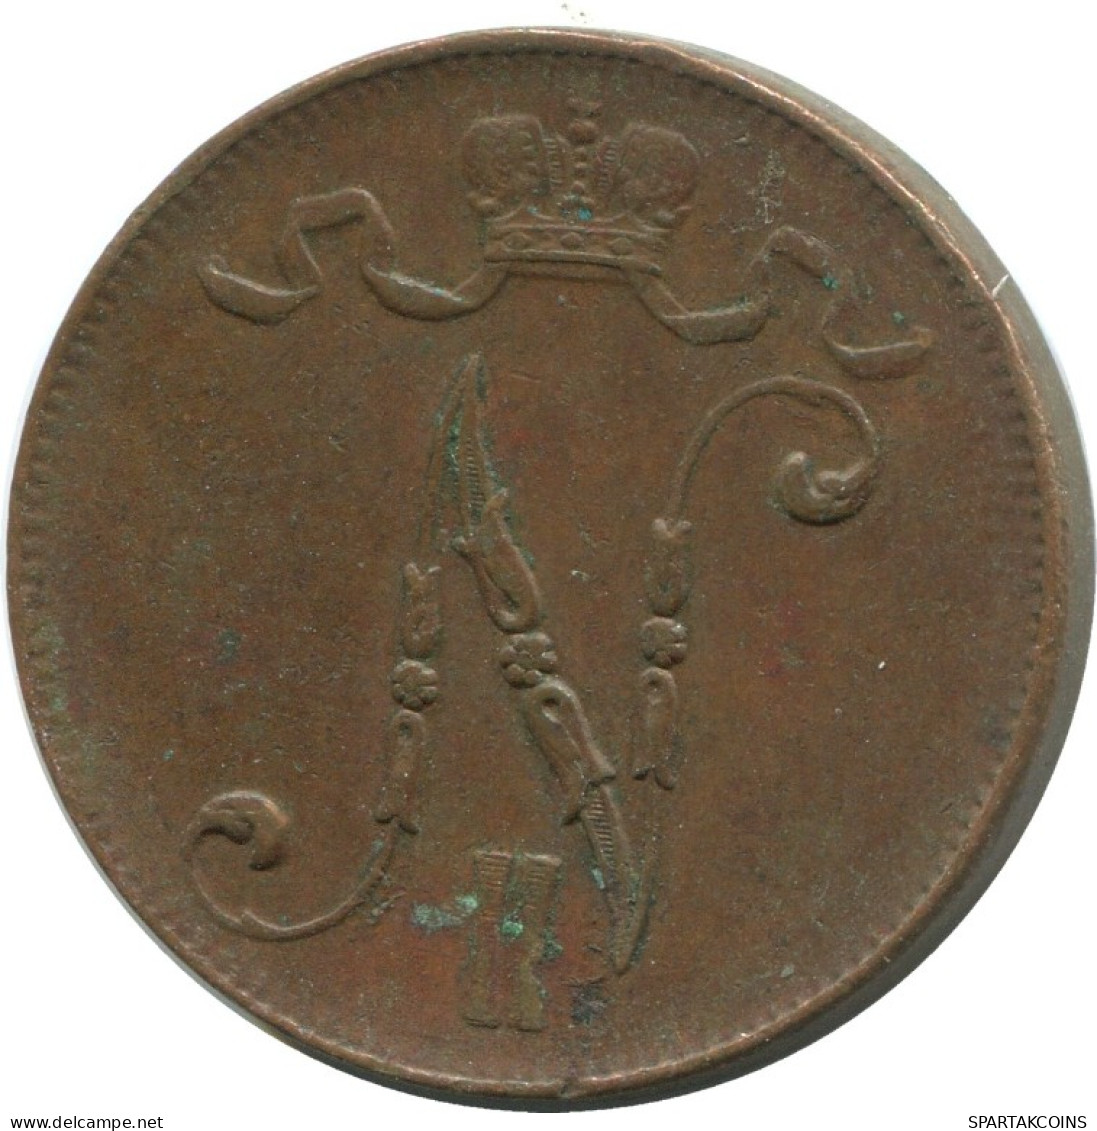 5 PENNIA 1916 FINLAND Coin RUSSIA EMPIRE #AB169.5.U.A - Finlande